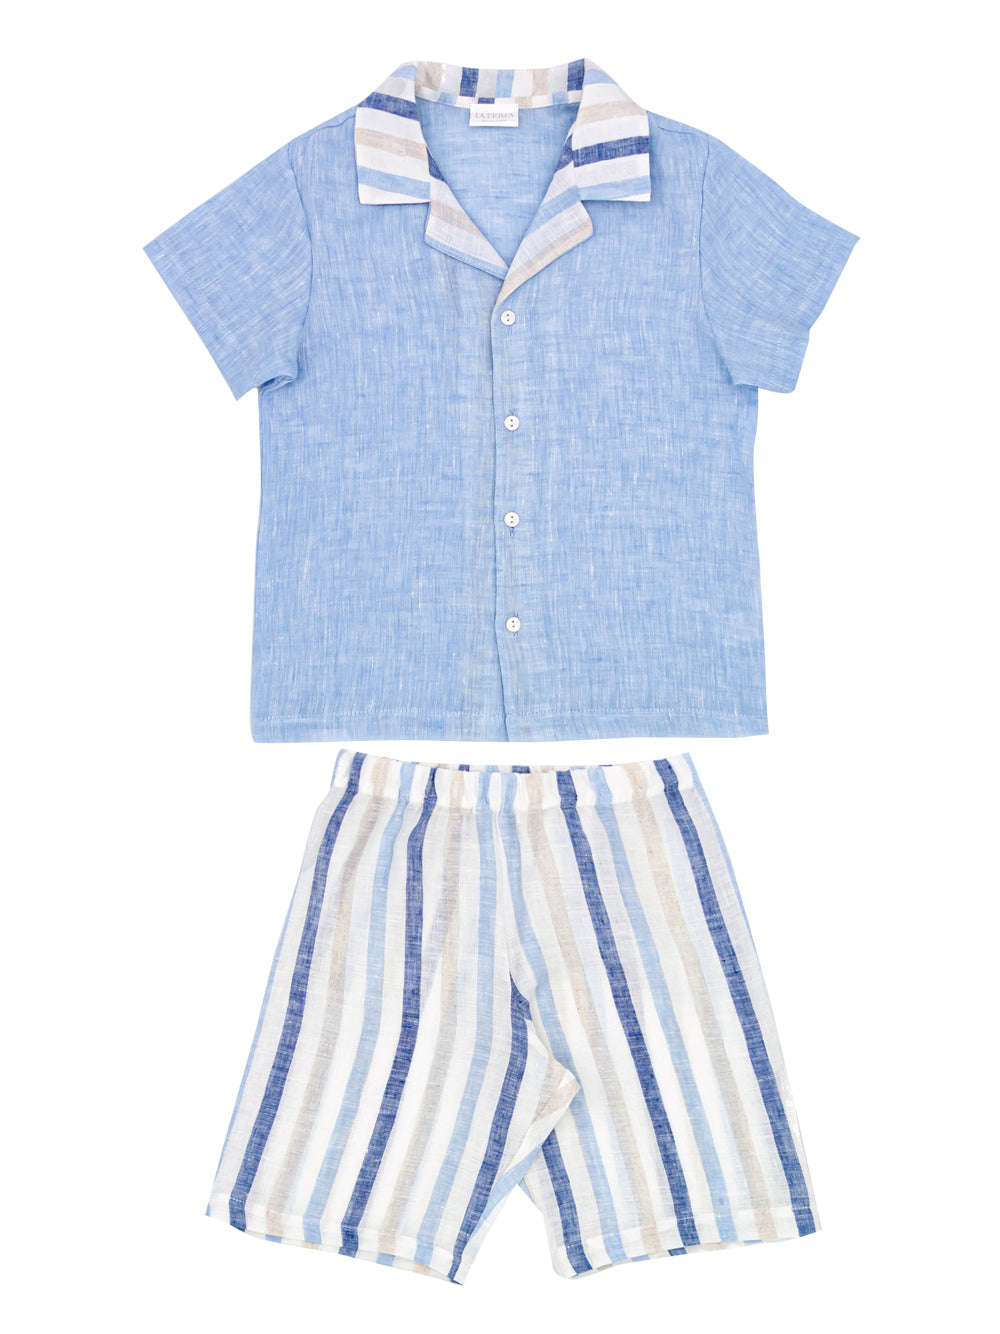 Blue and Grey Striped Pyjamas